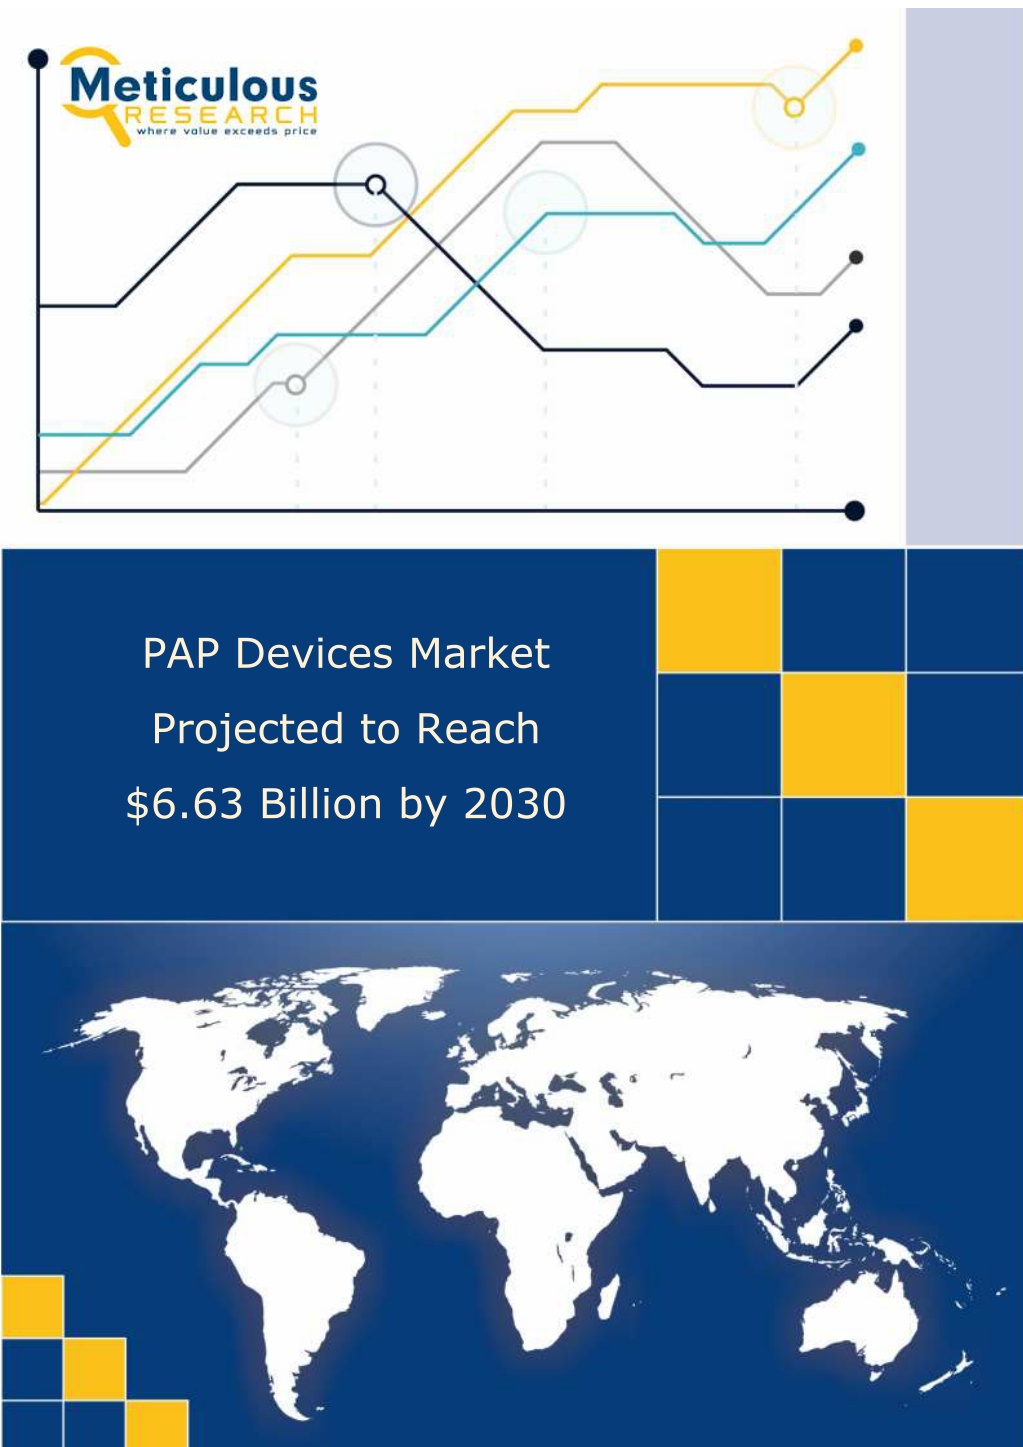 pap devices market l.w